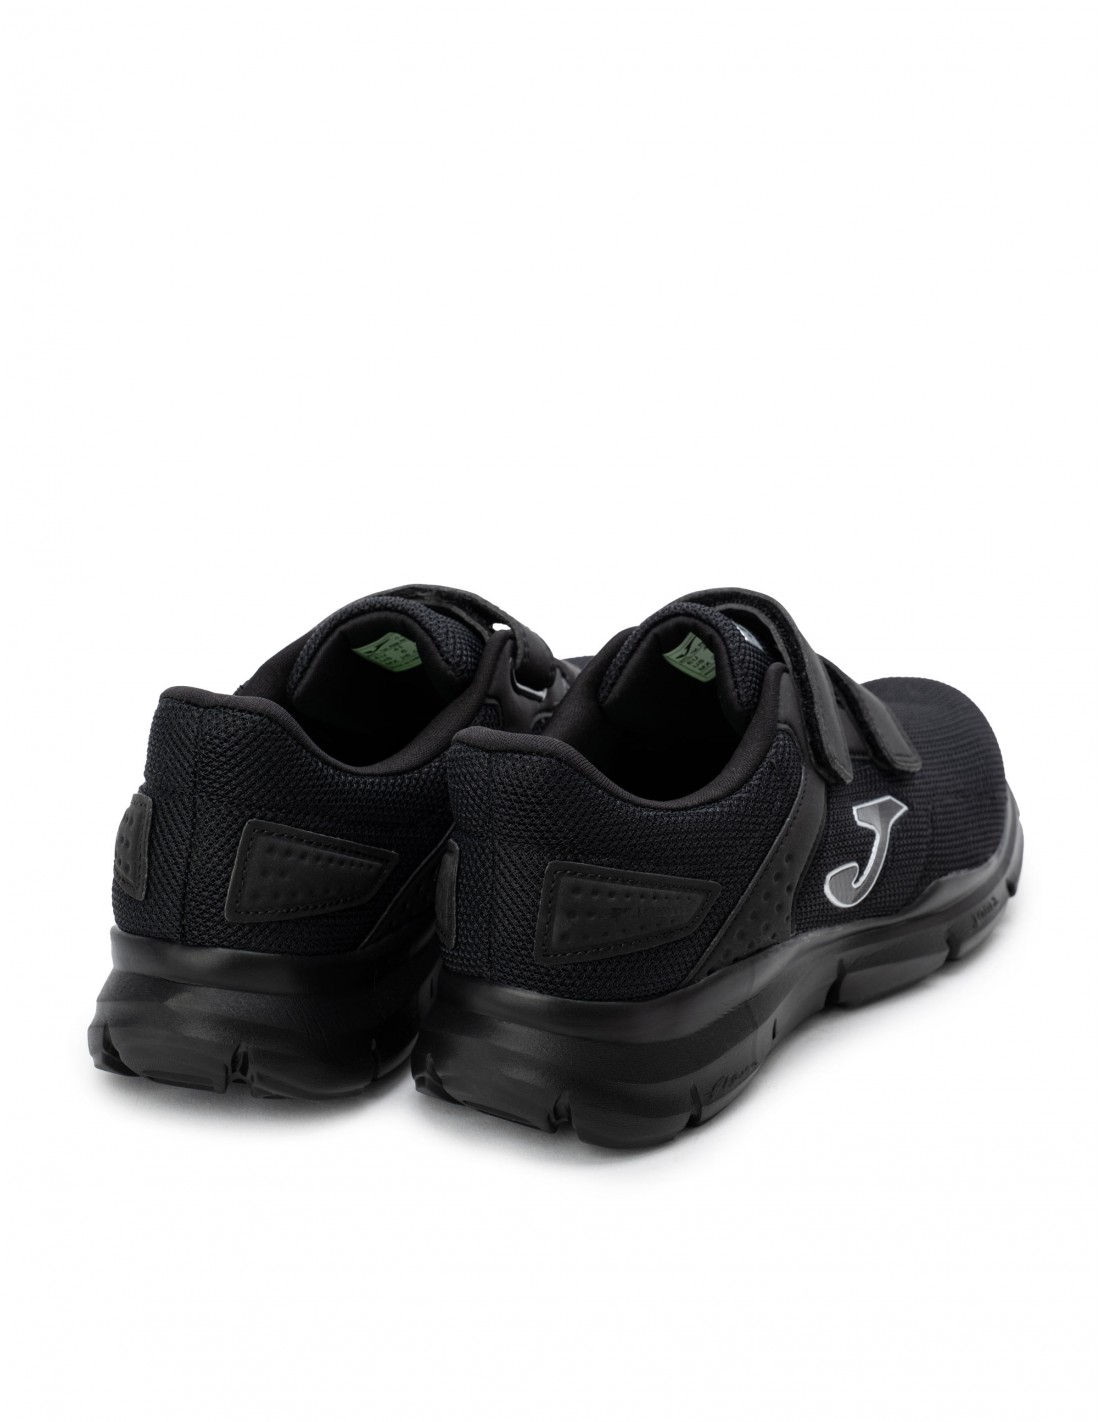 Zapatillas hombre JOMA SPORT con Velcro Reprise negro  Puber Sports. Tu  tienda de deportes y moda deportiva.